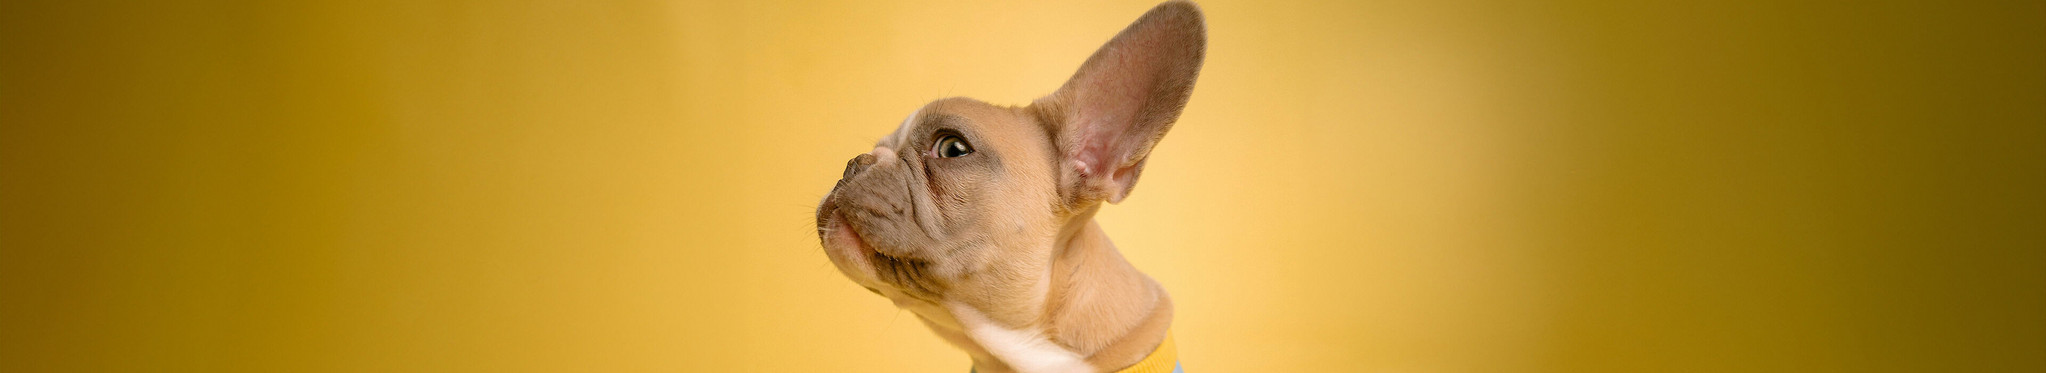 Hund spitzt das Ohr